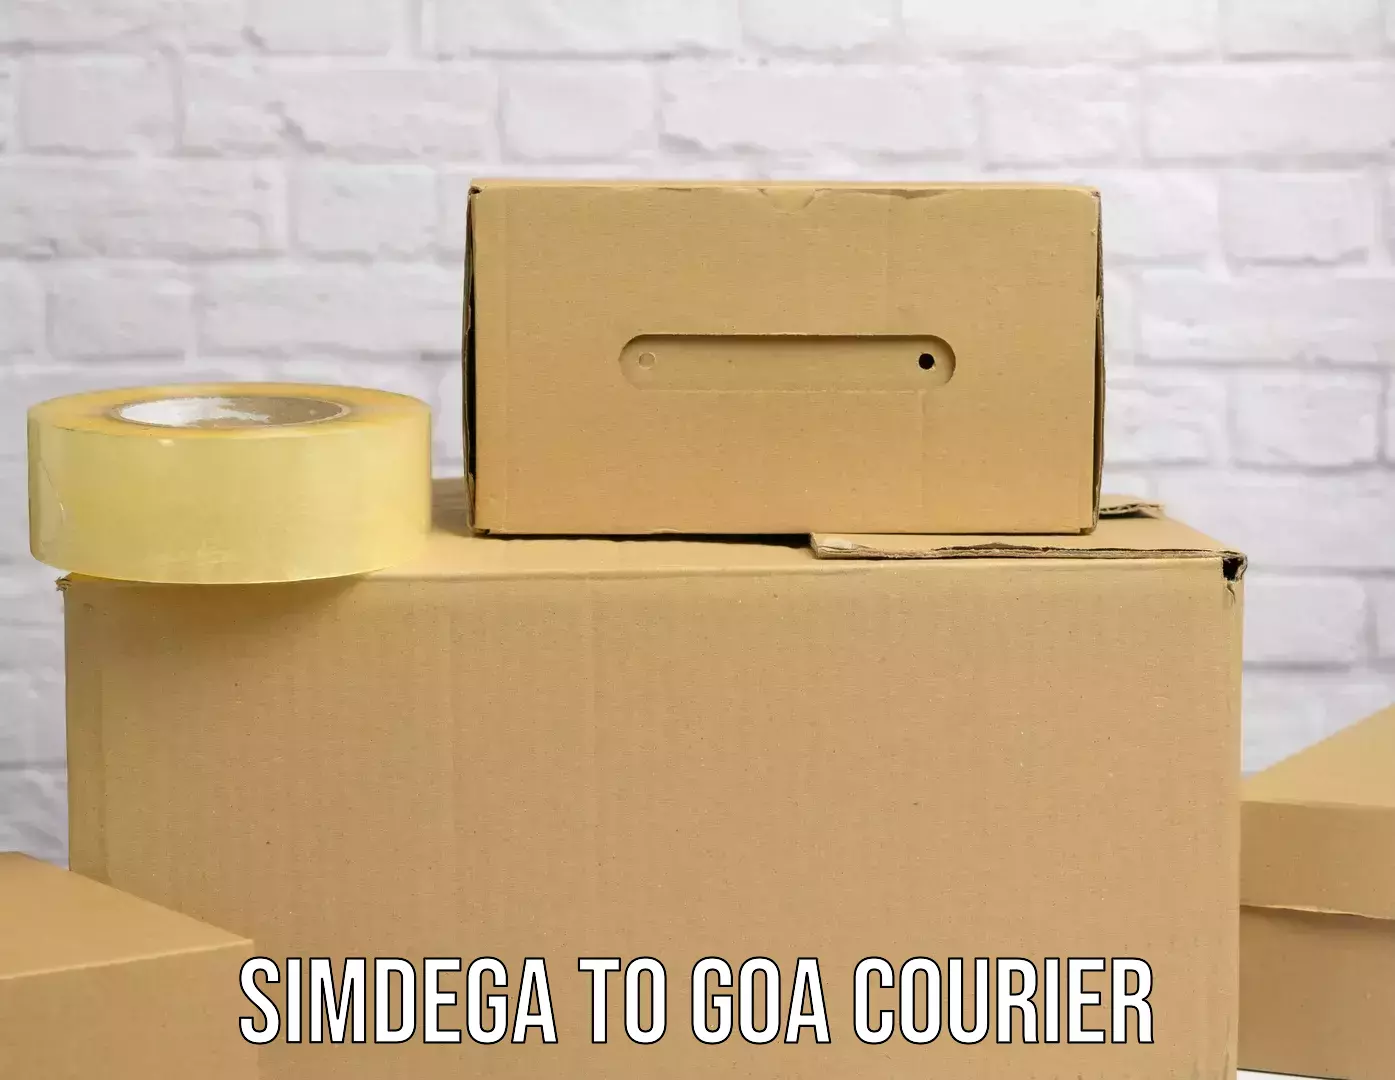 Fast delivery service Simdega to Panaji